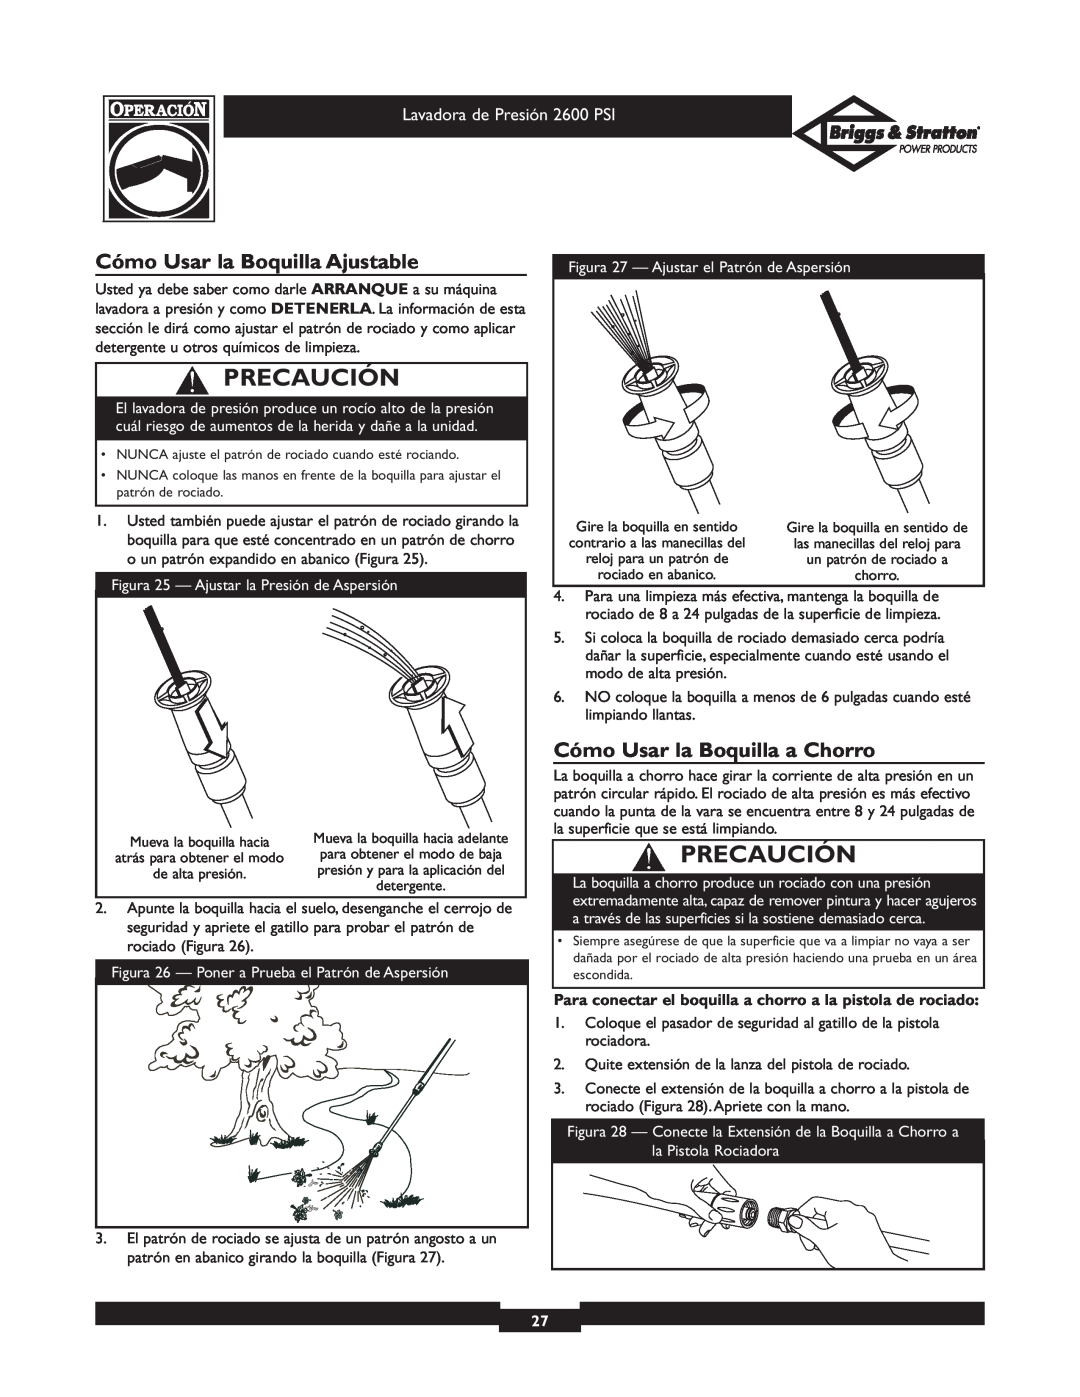 Briggs & Stratton 20216 owner manual Cómo Usar la Boquilla Ajustable, Cómo Usar la Boquilla a Chorro, Precaución 